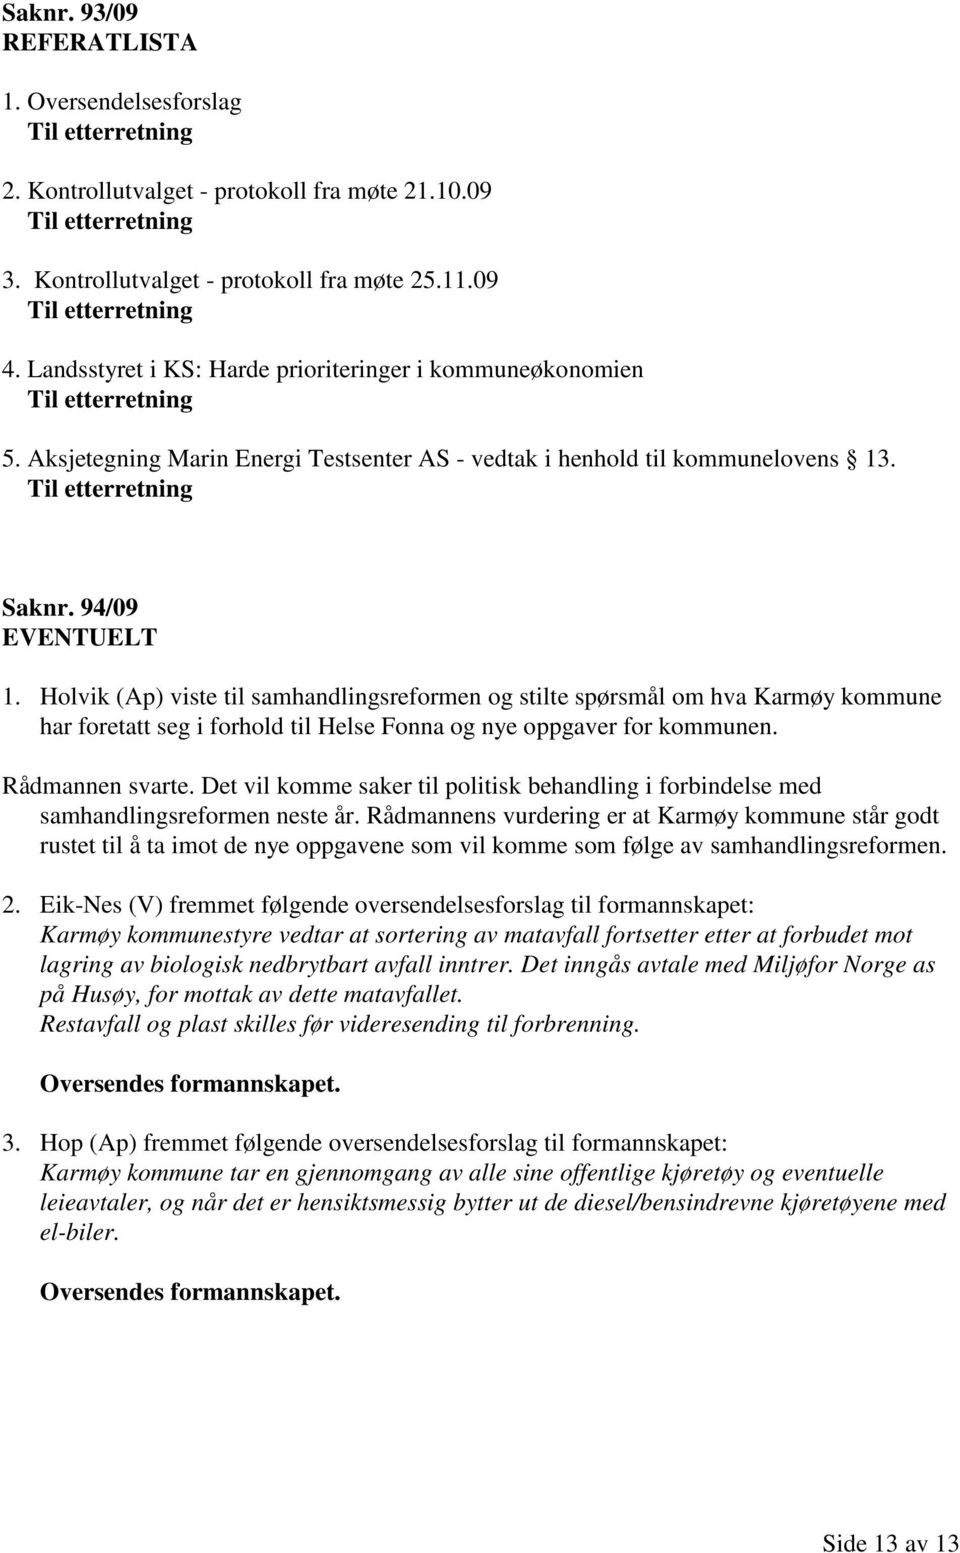 Til etterretning Saknr. 94/09 EVENTUELT 1. Holvik (Ap) viste til samhandlingsreformen og stilte spørsmål om hva Karmøy kommune har foretatt seg i forhold til Helse Fonna og nye oppgaver for kommunen.